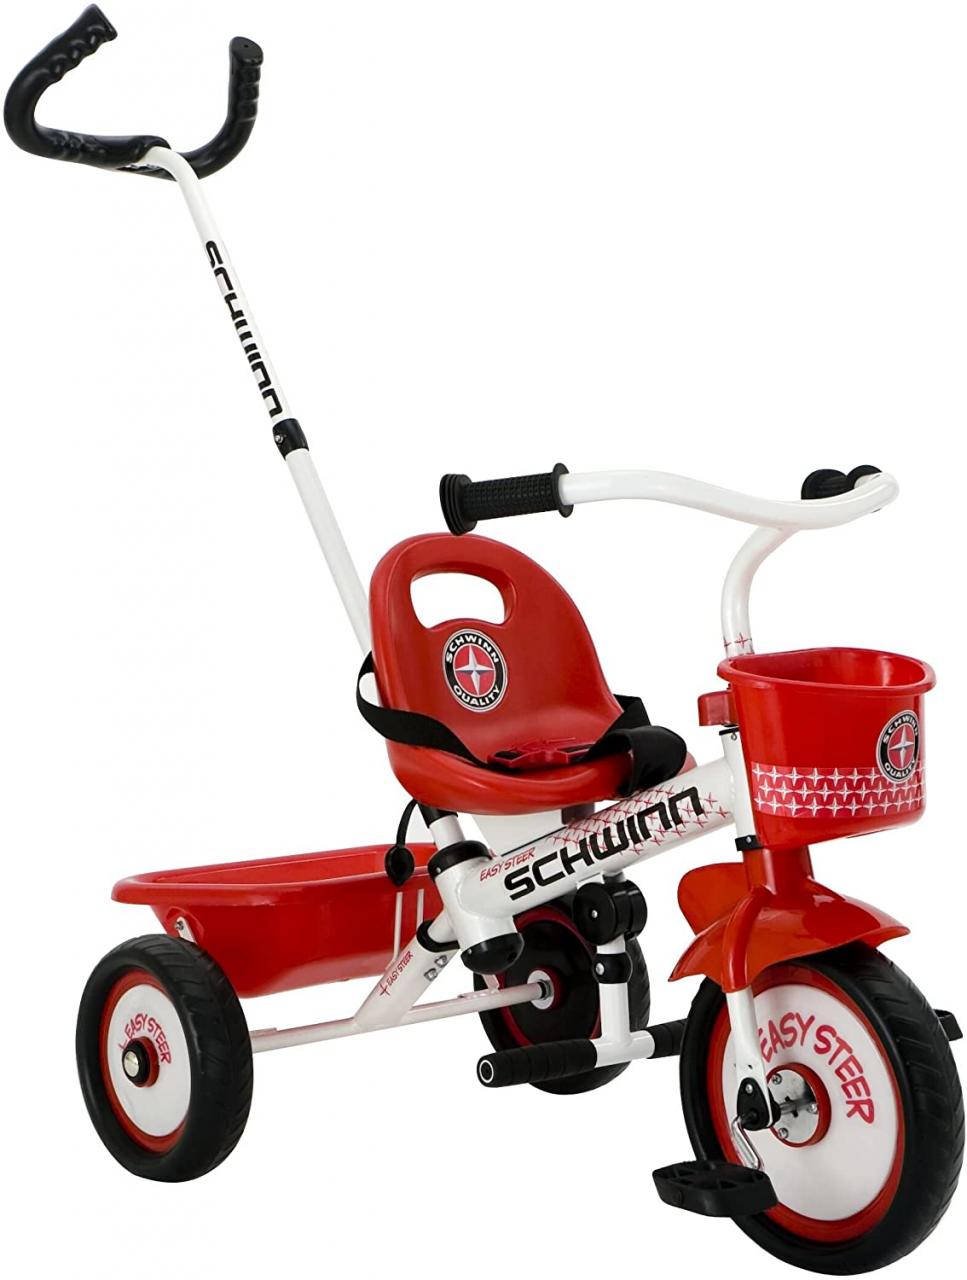 Buy Schwinn Easy Steer Tricycle, Red/White, 8